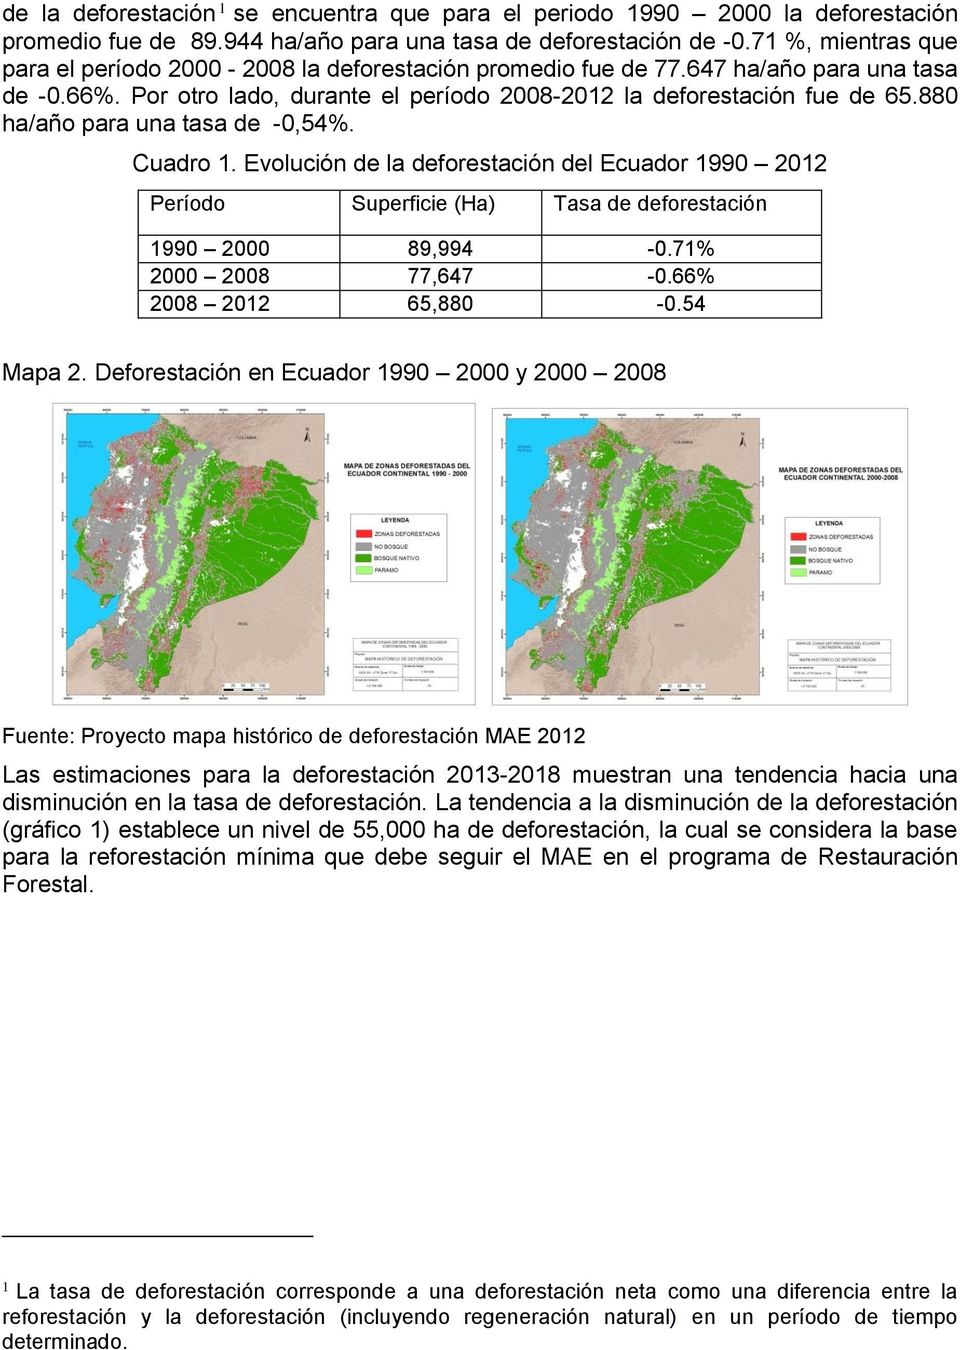 88 ha/año para una tasa de -,54%. Cuadro 1. Evolución de la deforestación del Ecuador 199 212 Período Superficie (Ha) Tasa de deforestación 199 2 89,994 -.71% 2 28 77,647 -.66% 28 212 65,88 -.